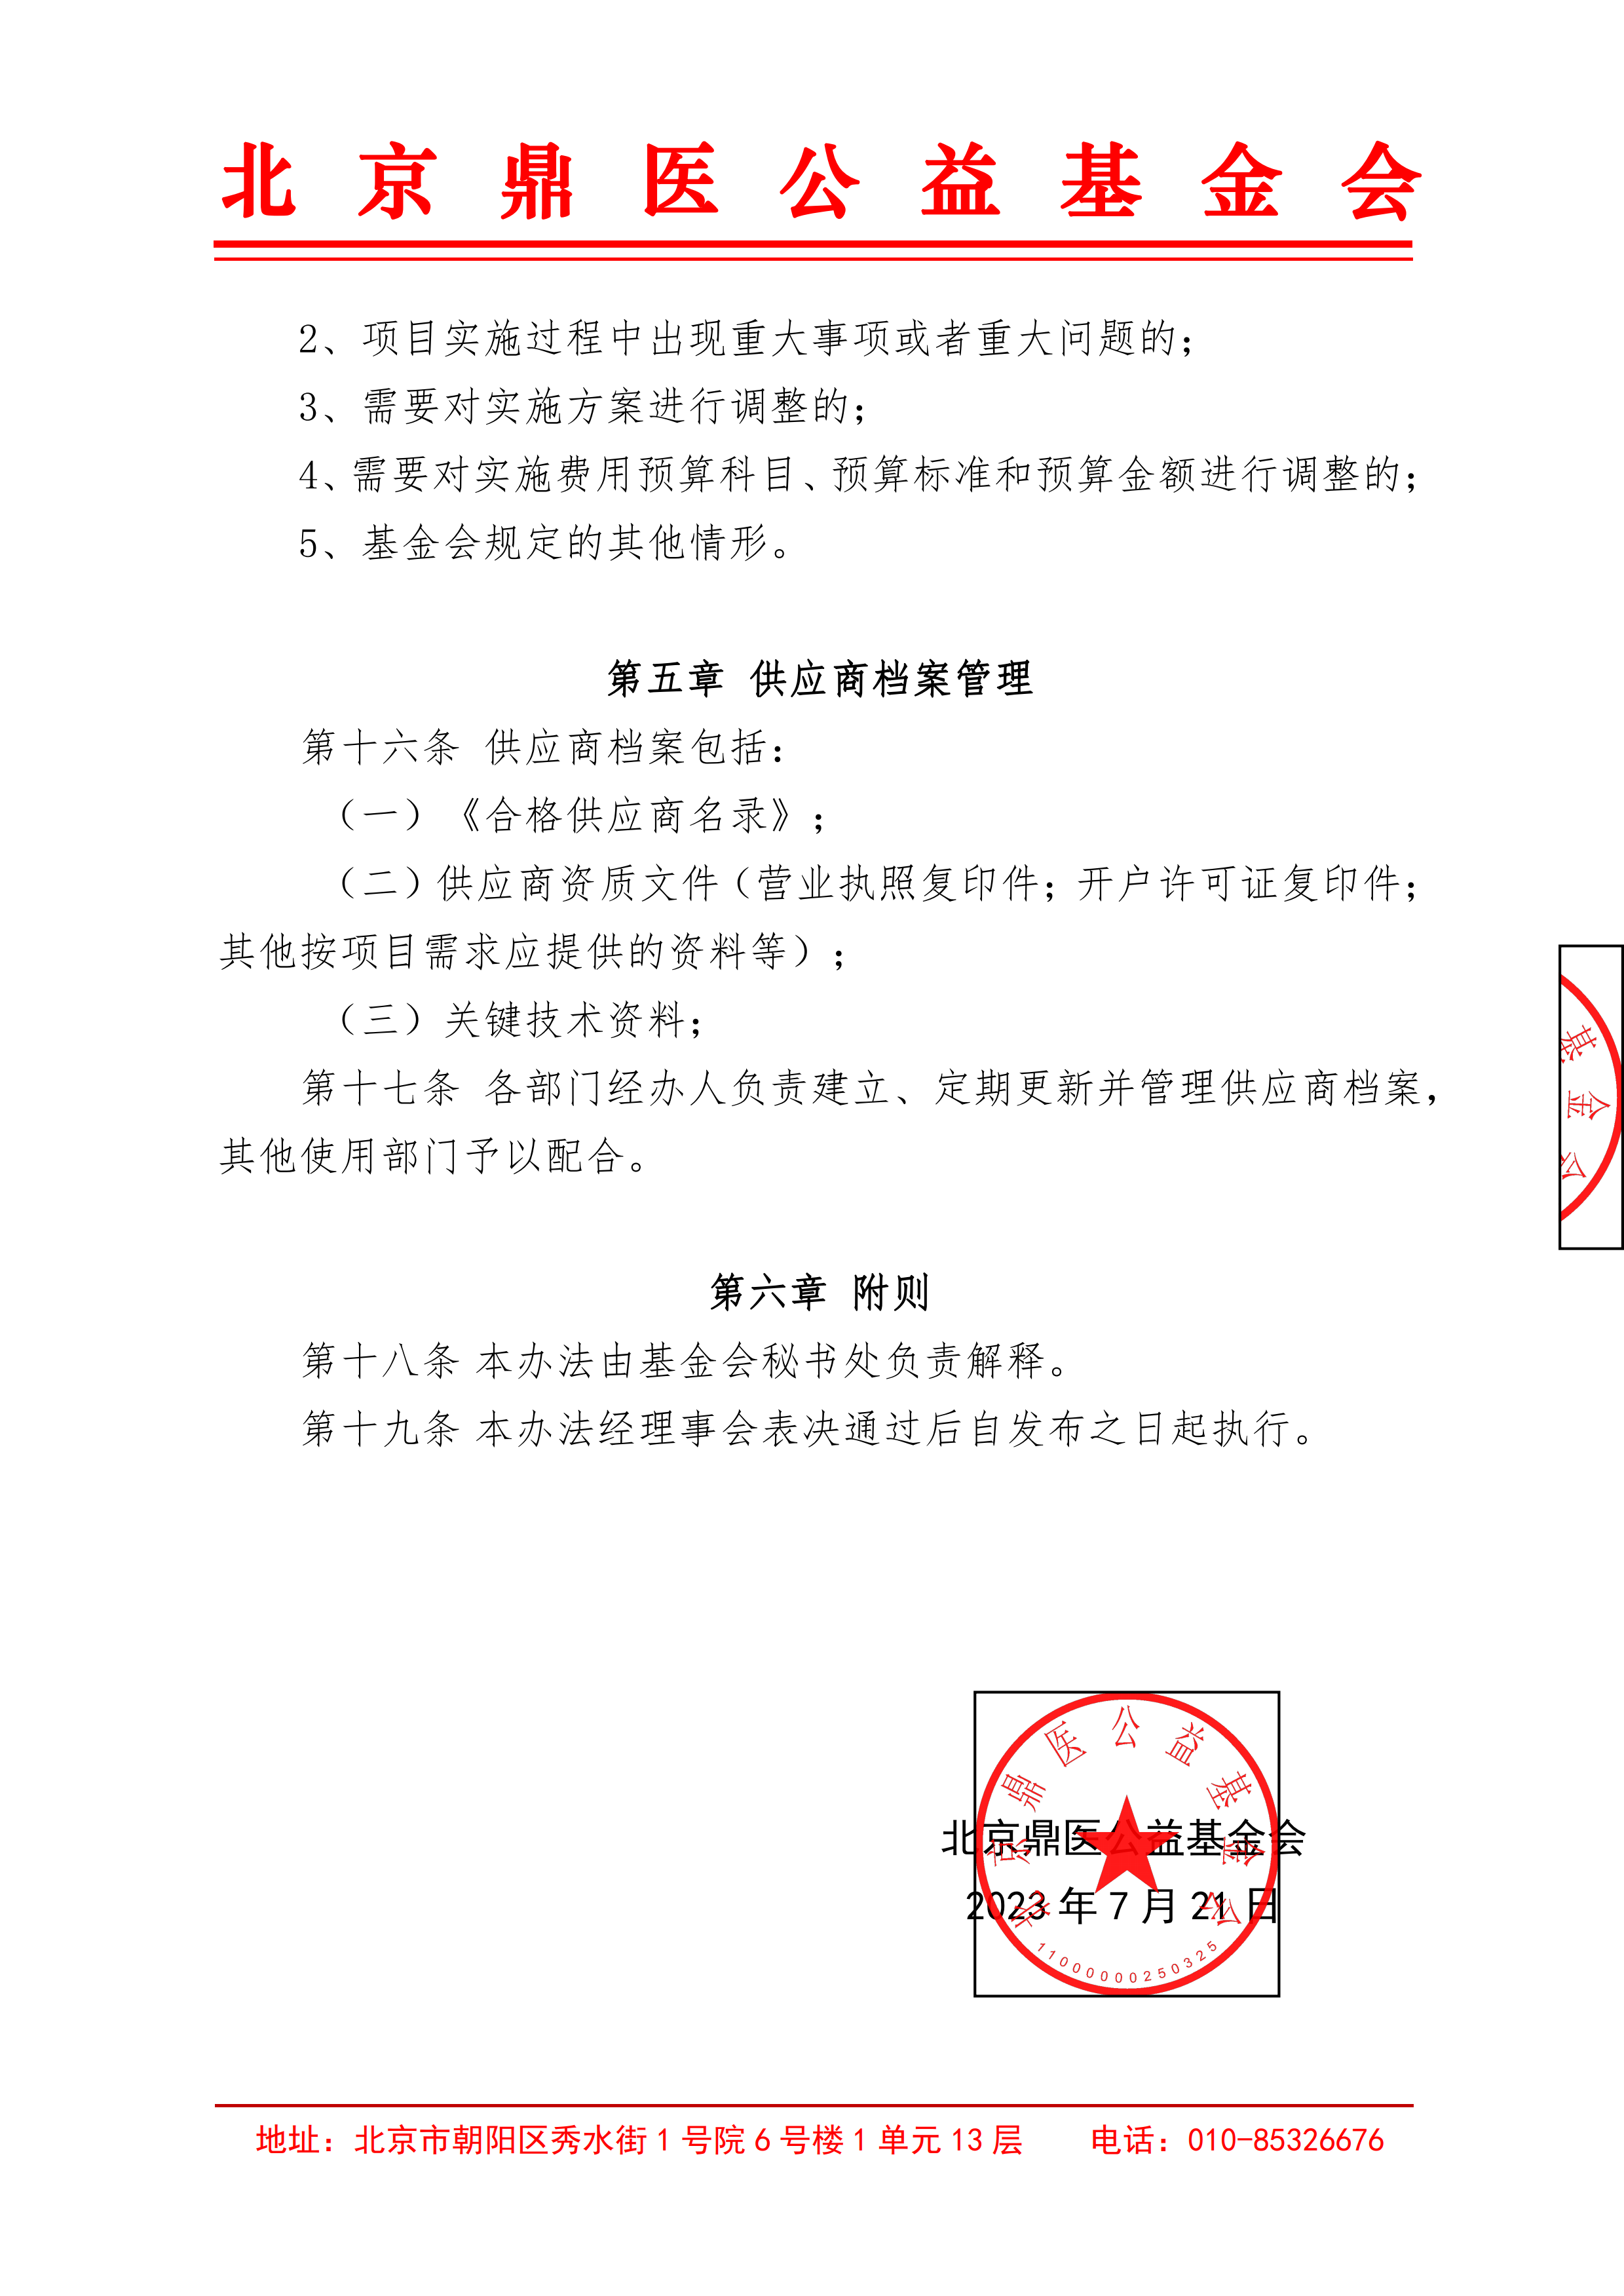 北京鼎医公益基金会第三方供应商管理制度4